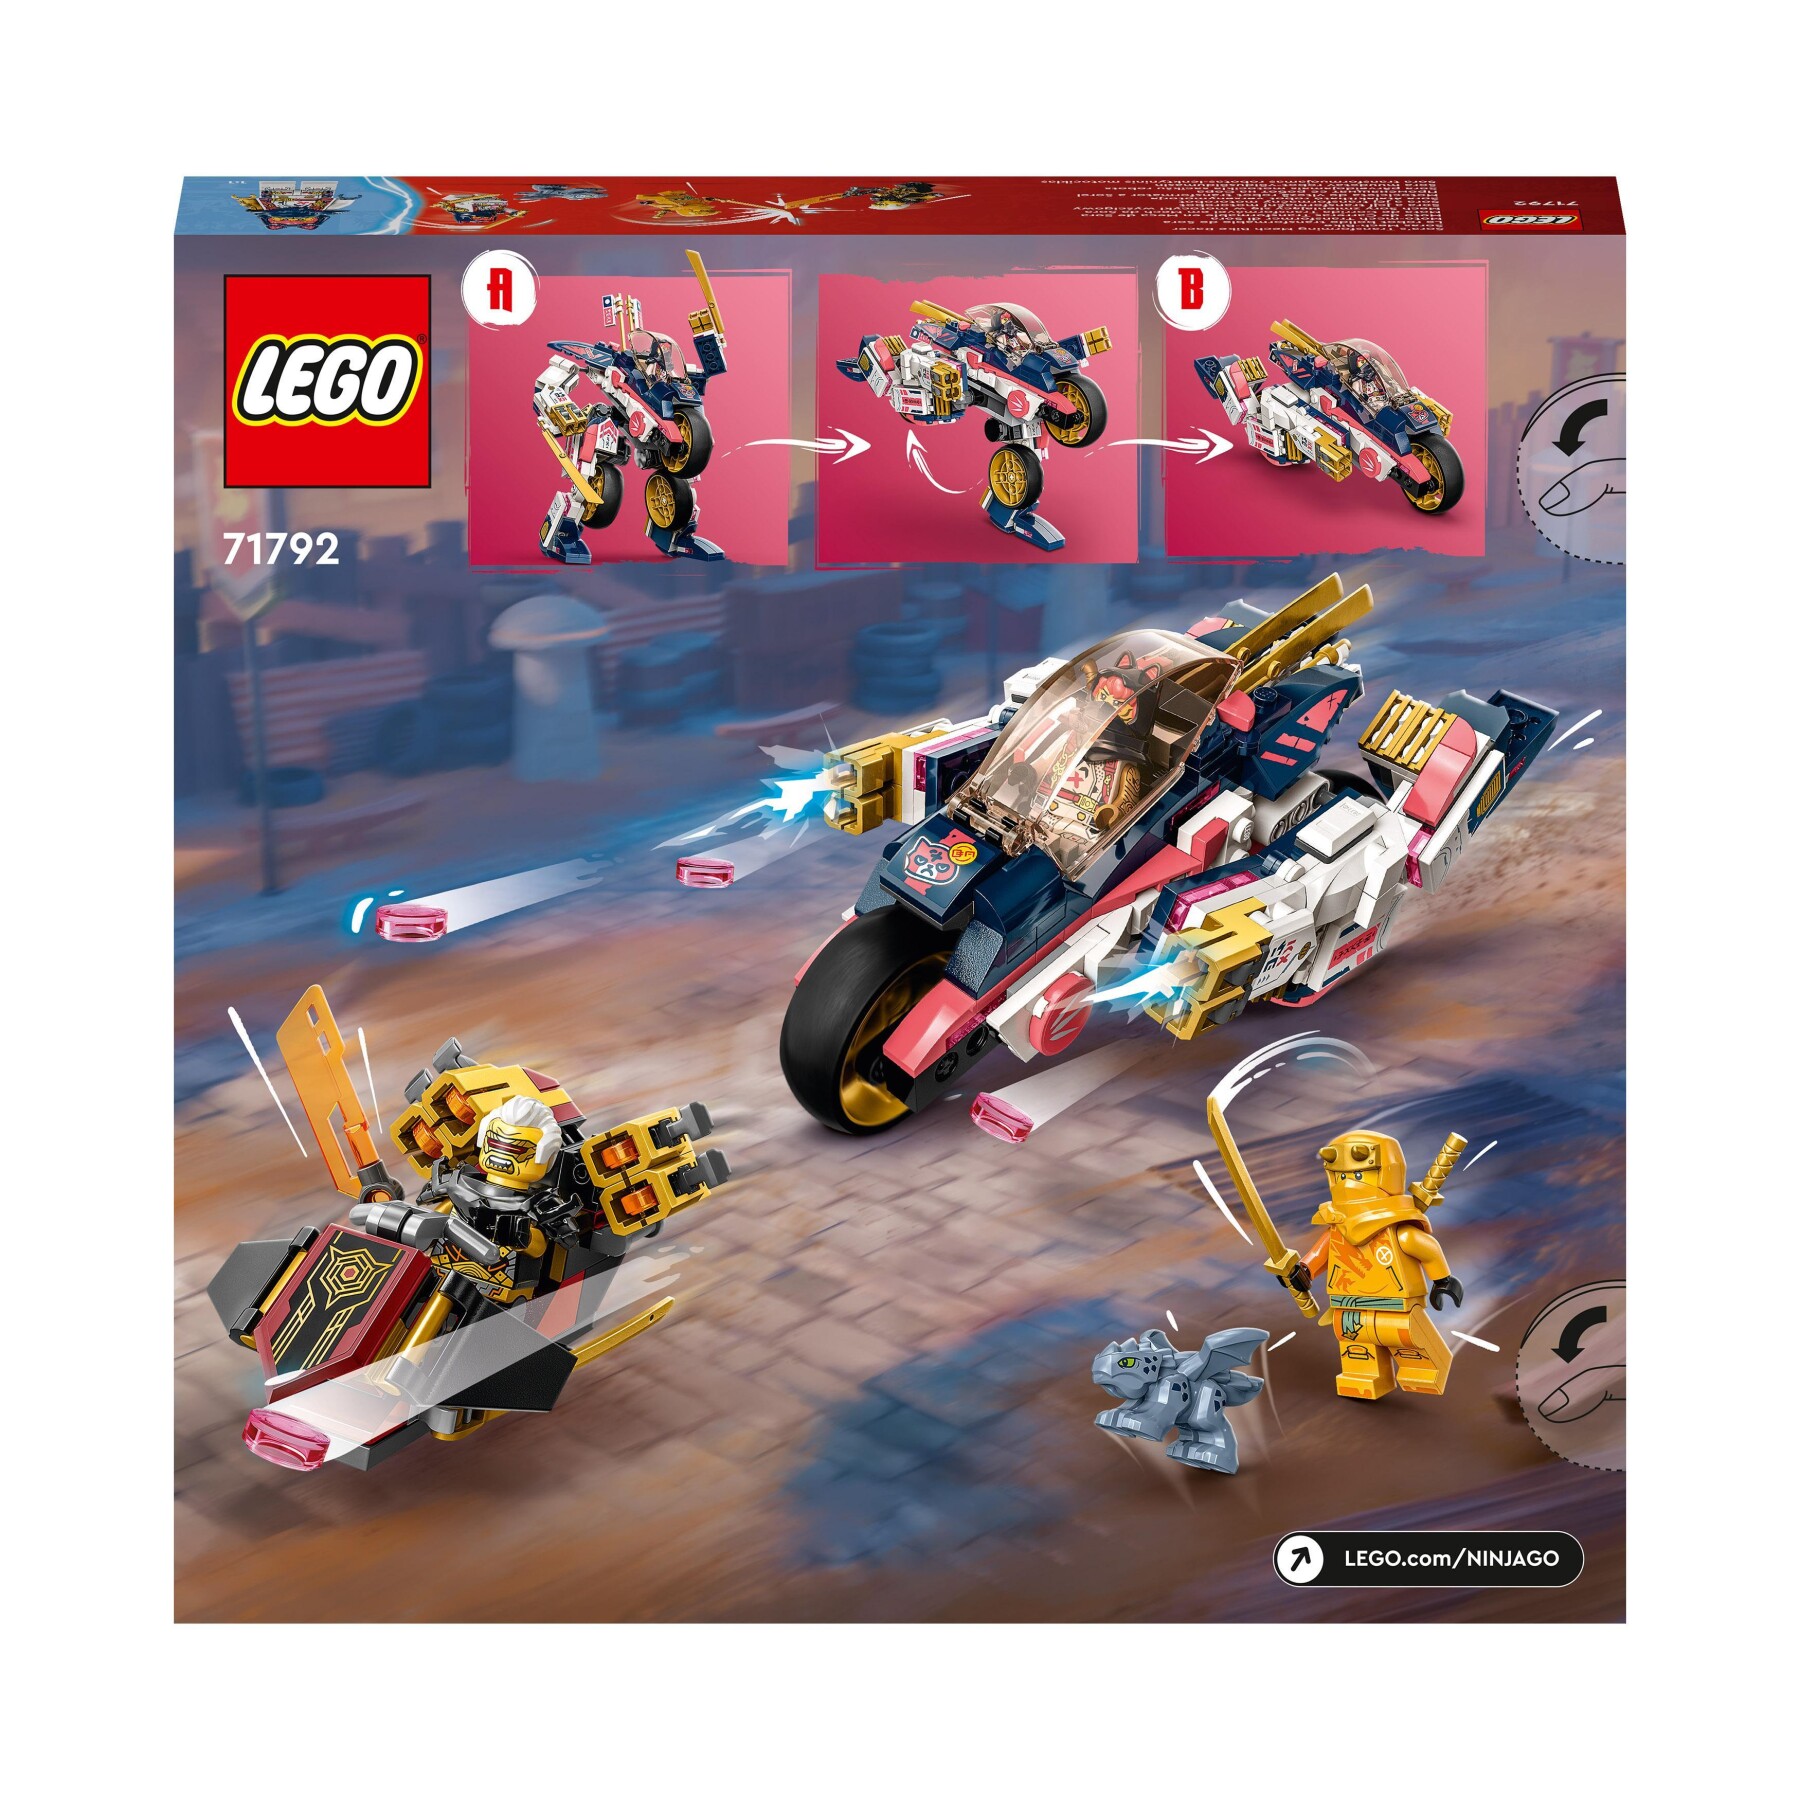 Lego ninjago 71792 moto-mech transformer di sora, set giochi 2in1 con action figure mech trasformabile in moto giocattolo - LEGO NINJAGO